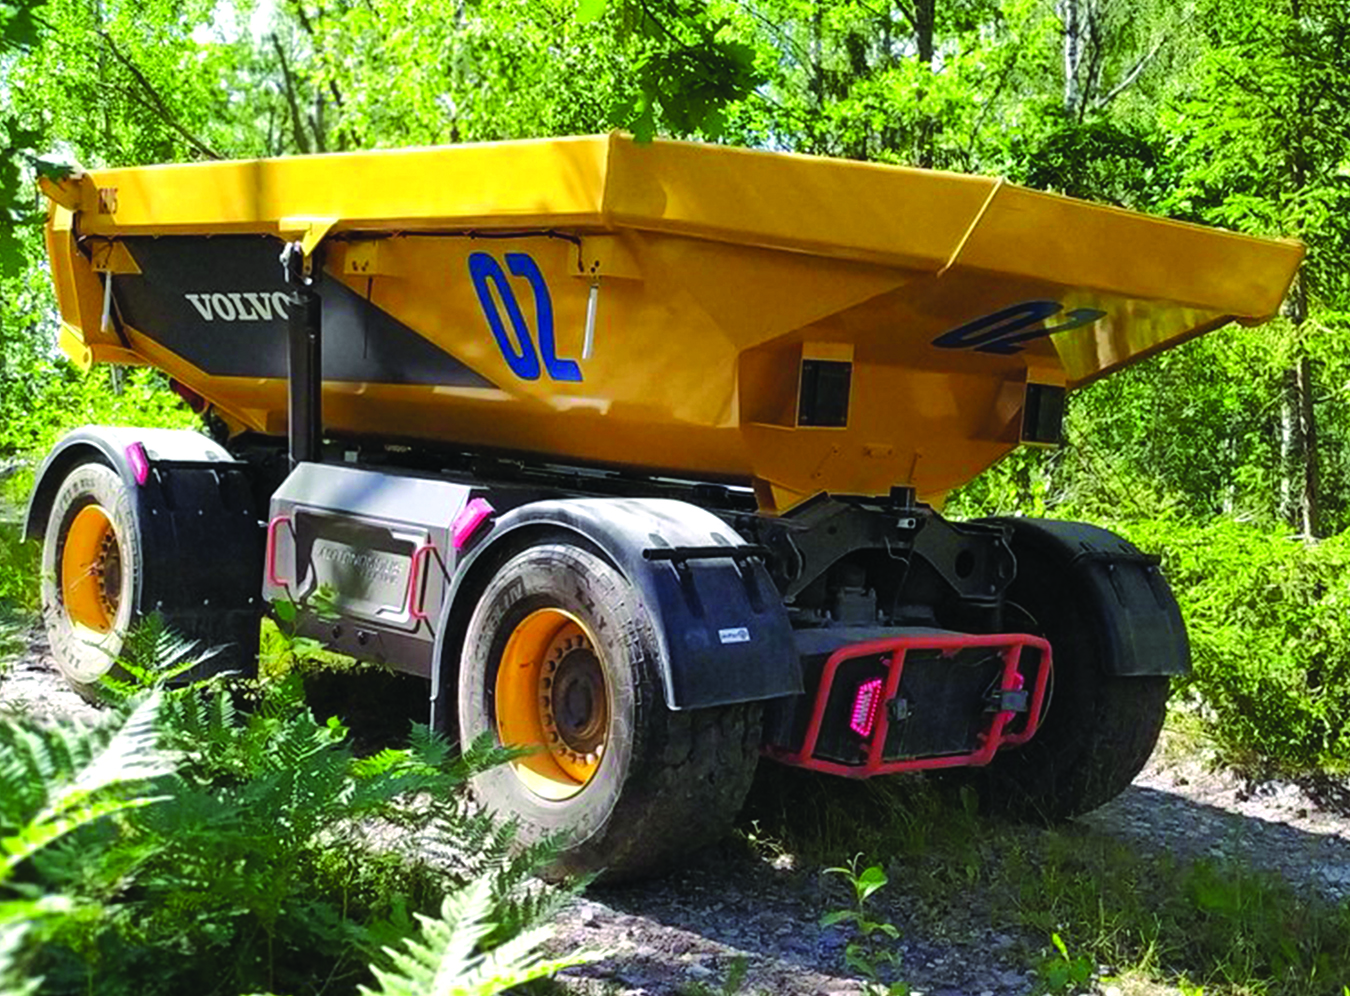 Brazilian construction company trials remote controlled Volvo FMX 4.ZERO  autonomous tipper truck